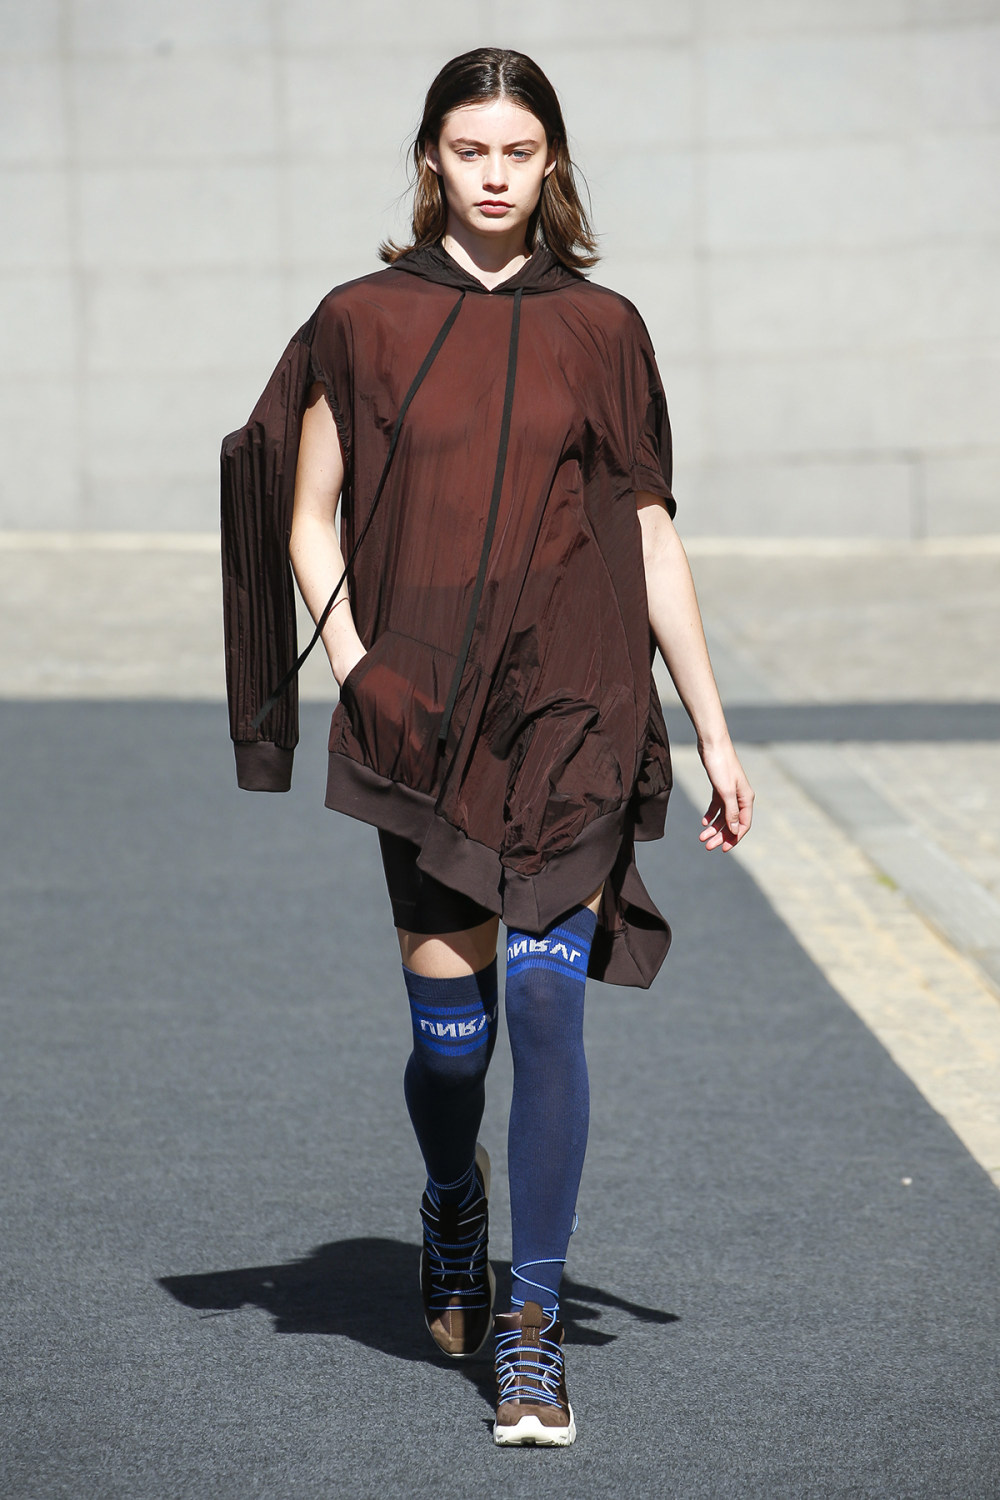 Unravel时装系列穿着超大号运动裤和派克大衣简约运动文胸-2.jpg